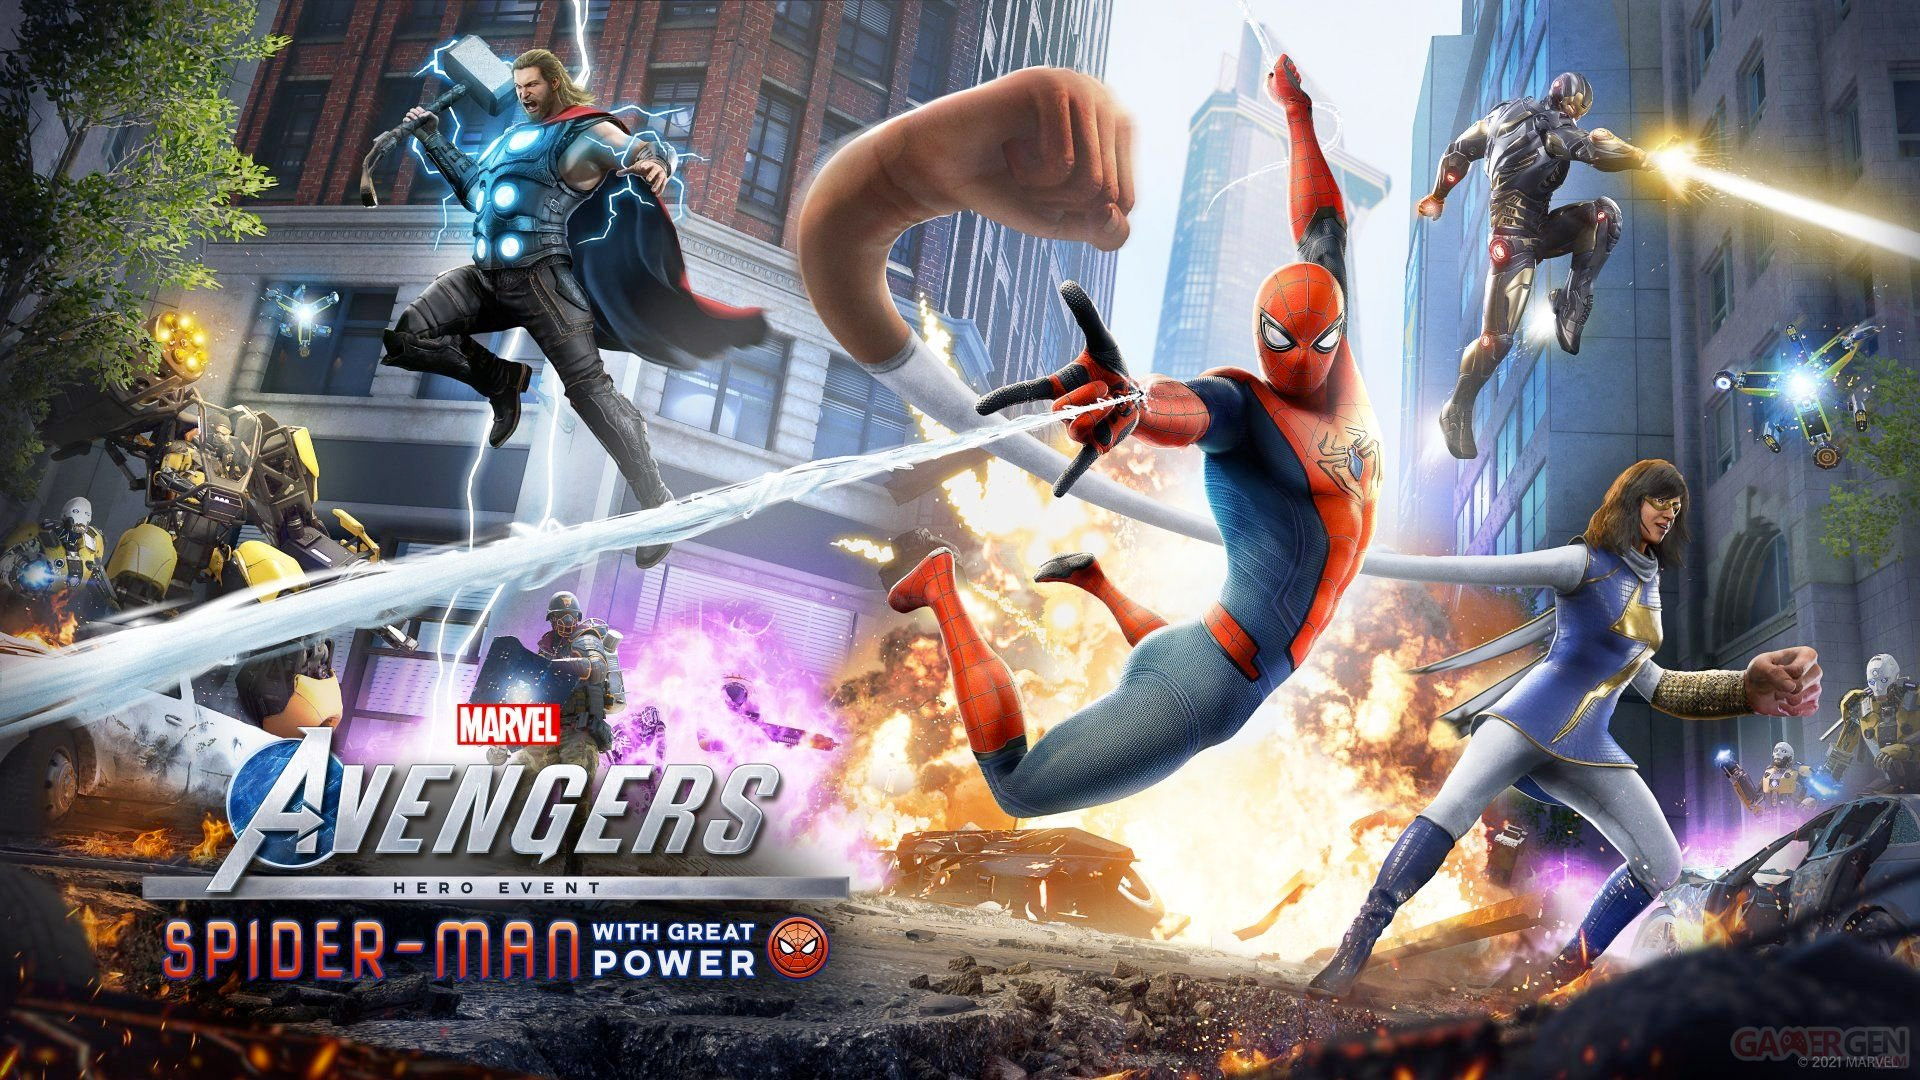 Marvel's Avengers Spider-Man ComicsOwl